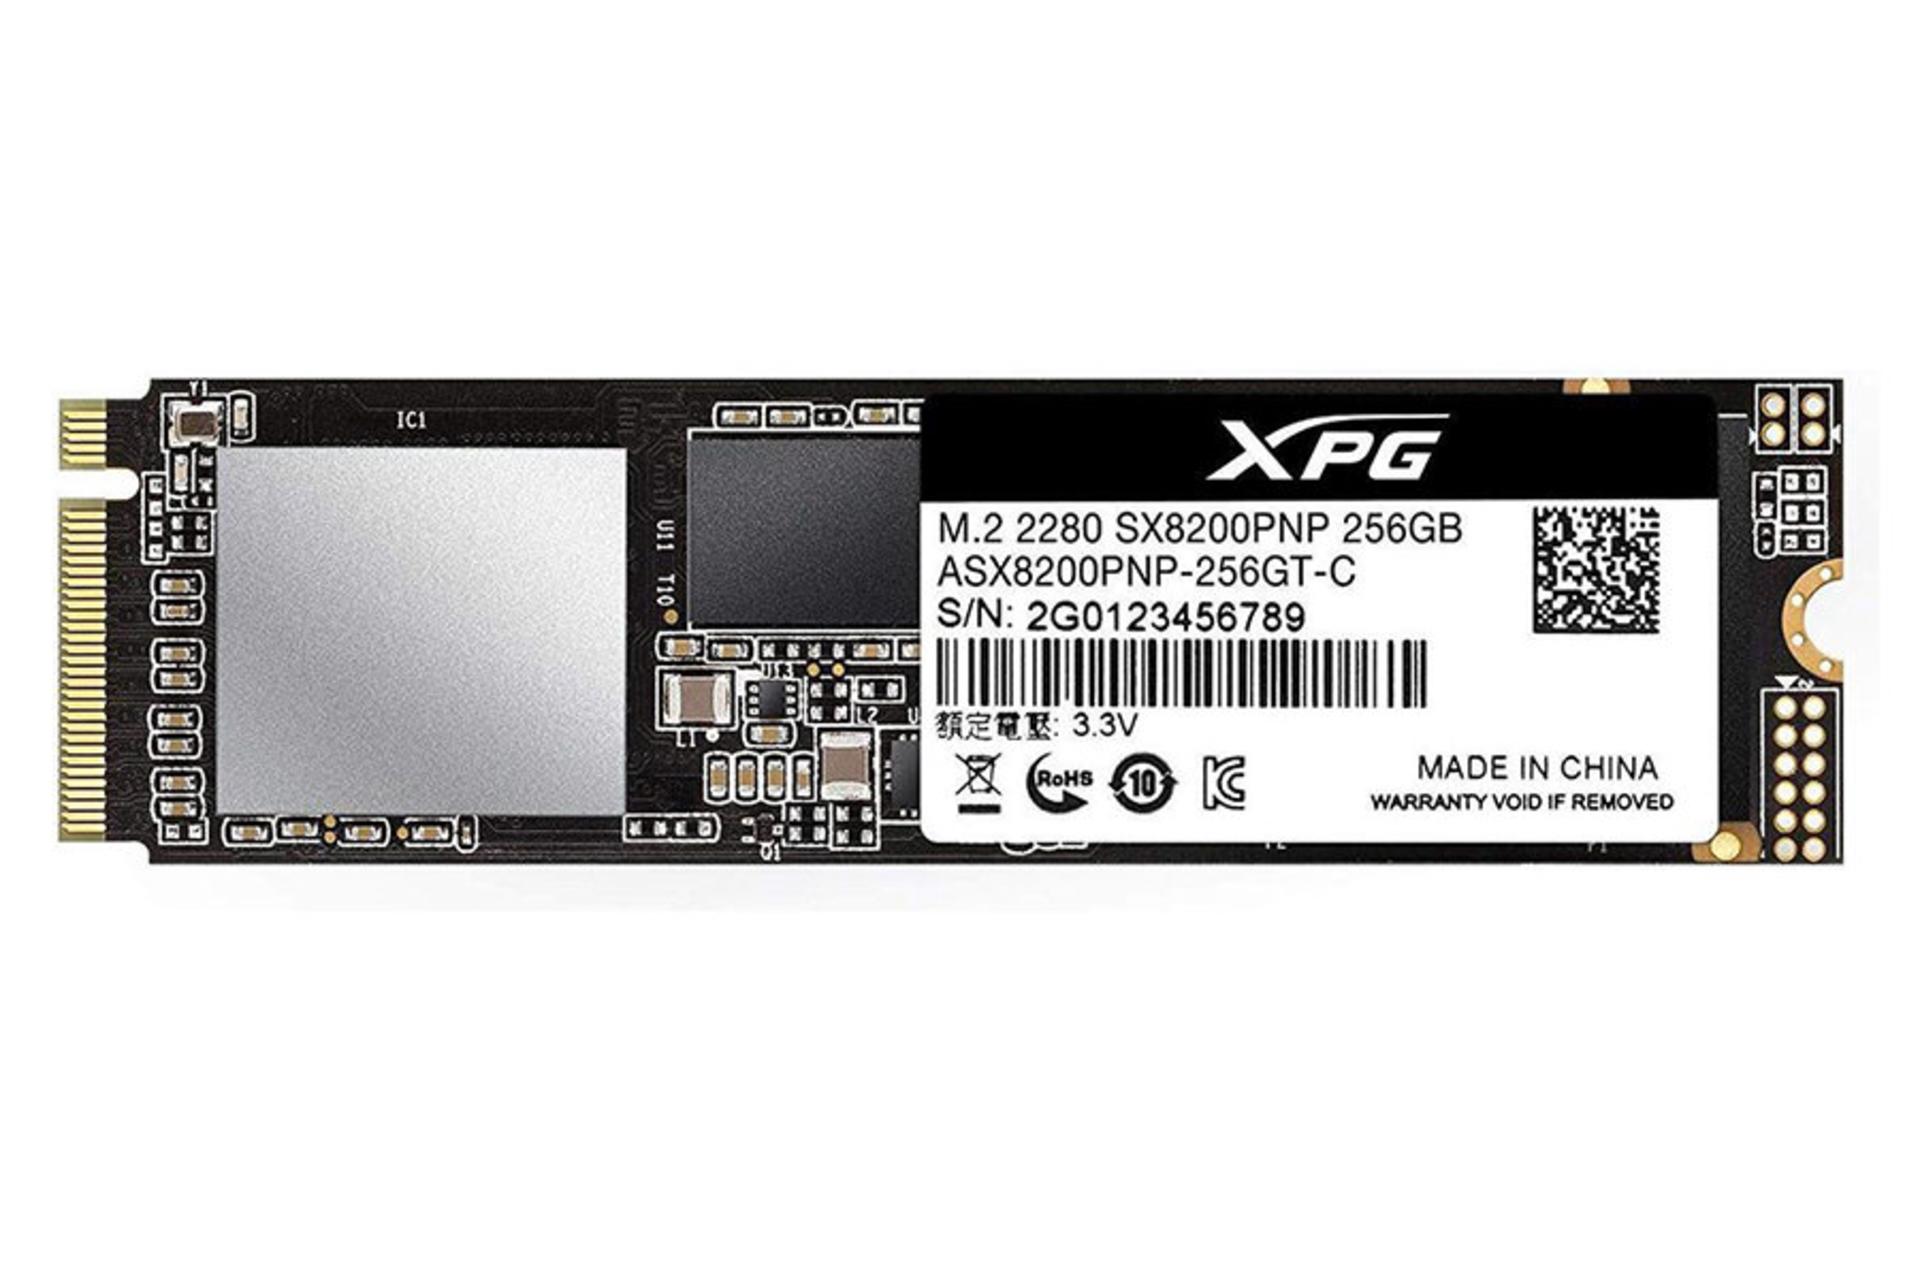 مرجع متخصصين ايران اي ديتا XPG SX8200 Pro PCIe M.2 ظرفيت 256 گيگابايت /  ADATA XPG SX8200 Pro PCIe M.2 256GB